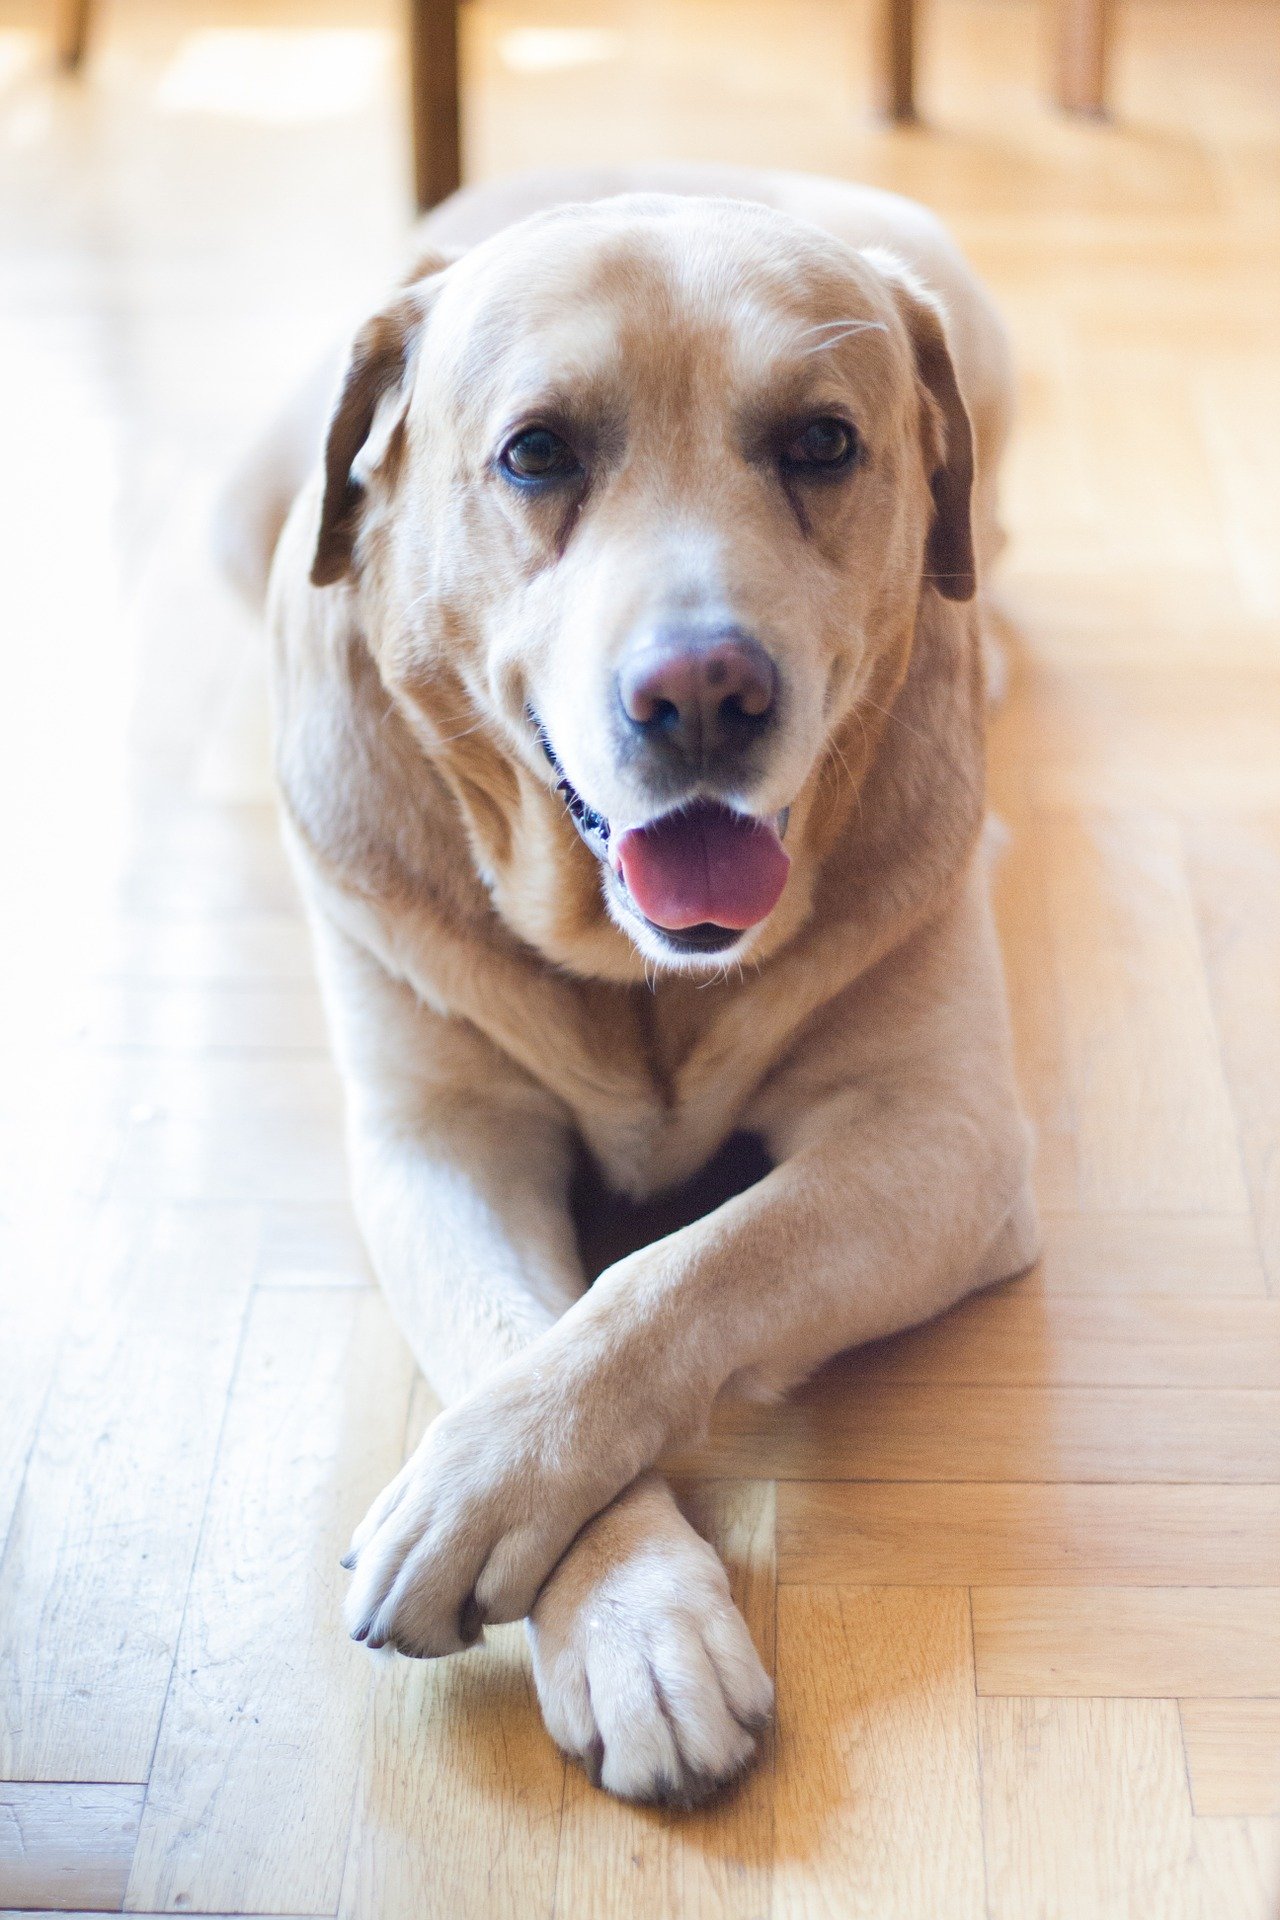 Labrador mirando inteligentemente a la cámara. | Imagen: Pixabay